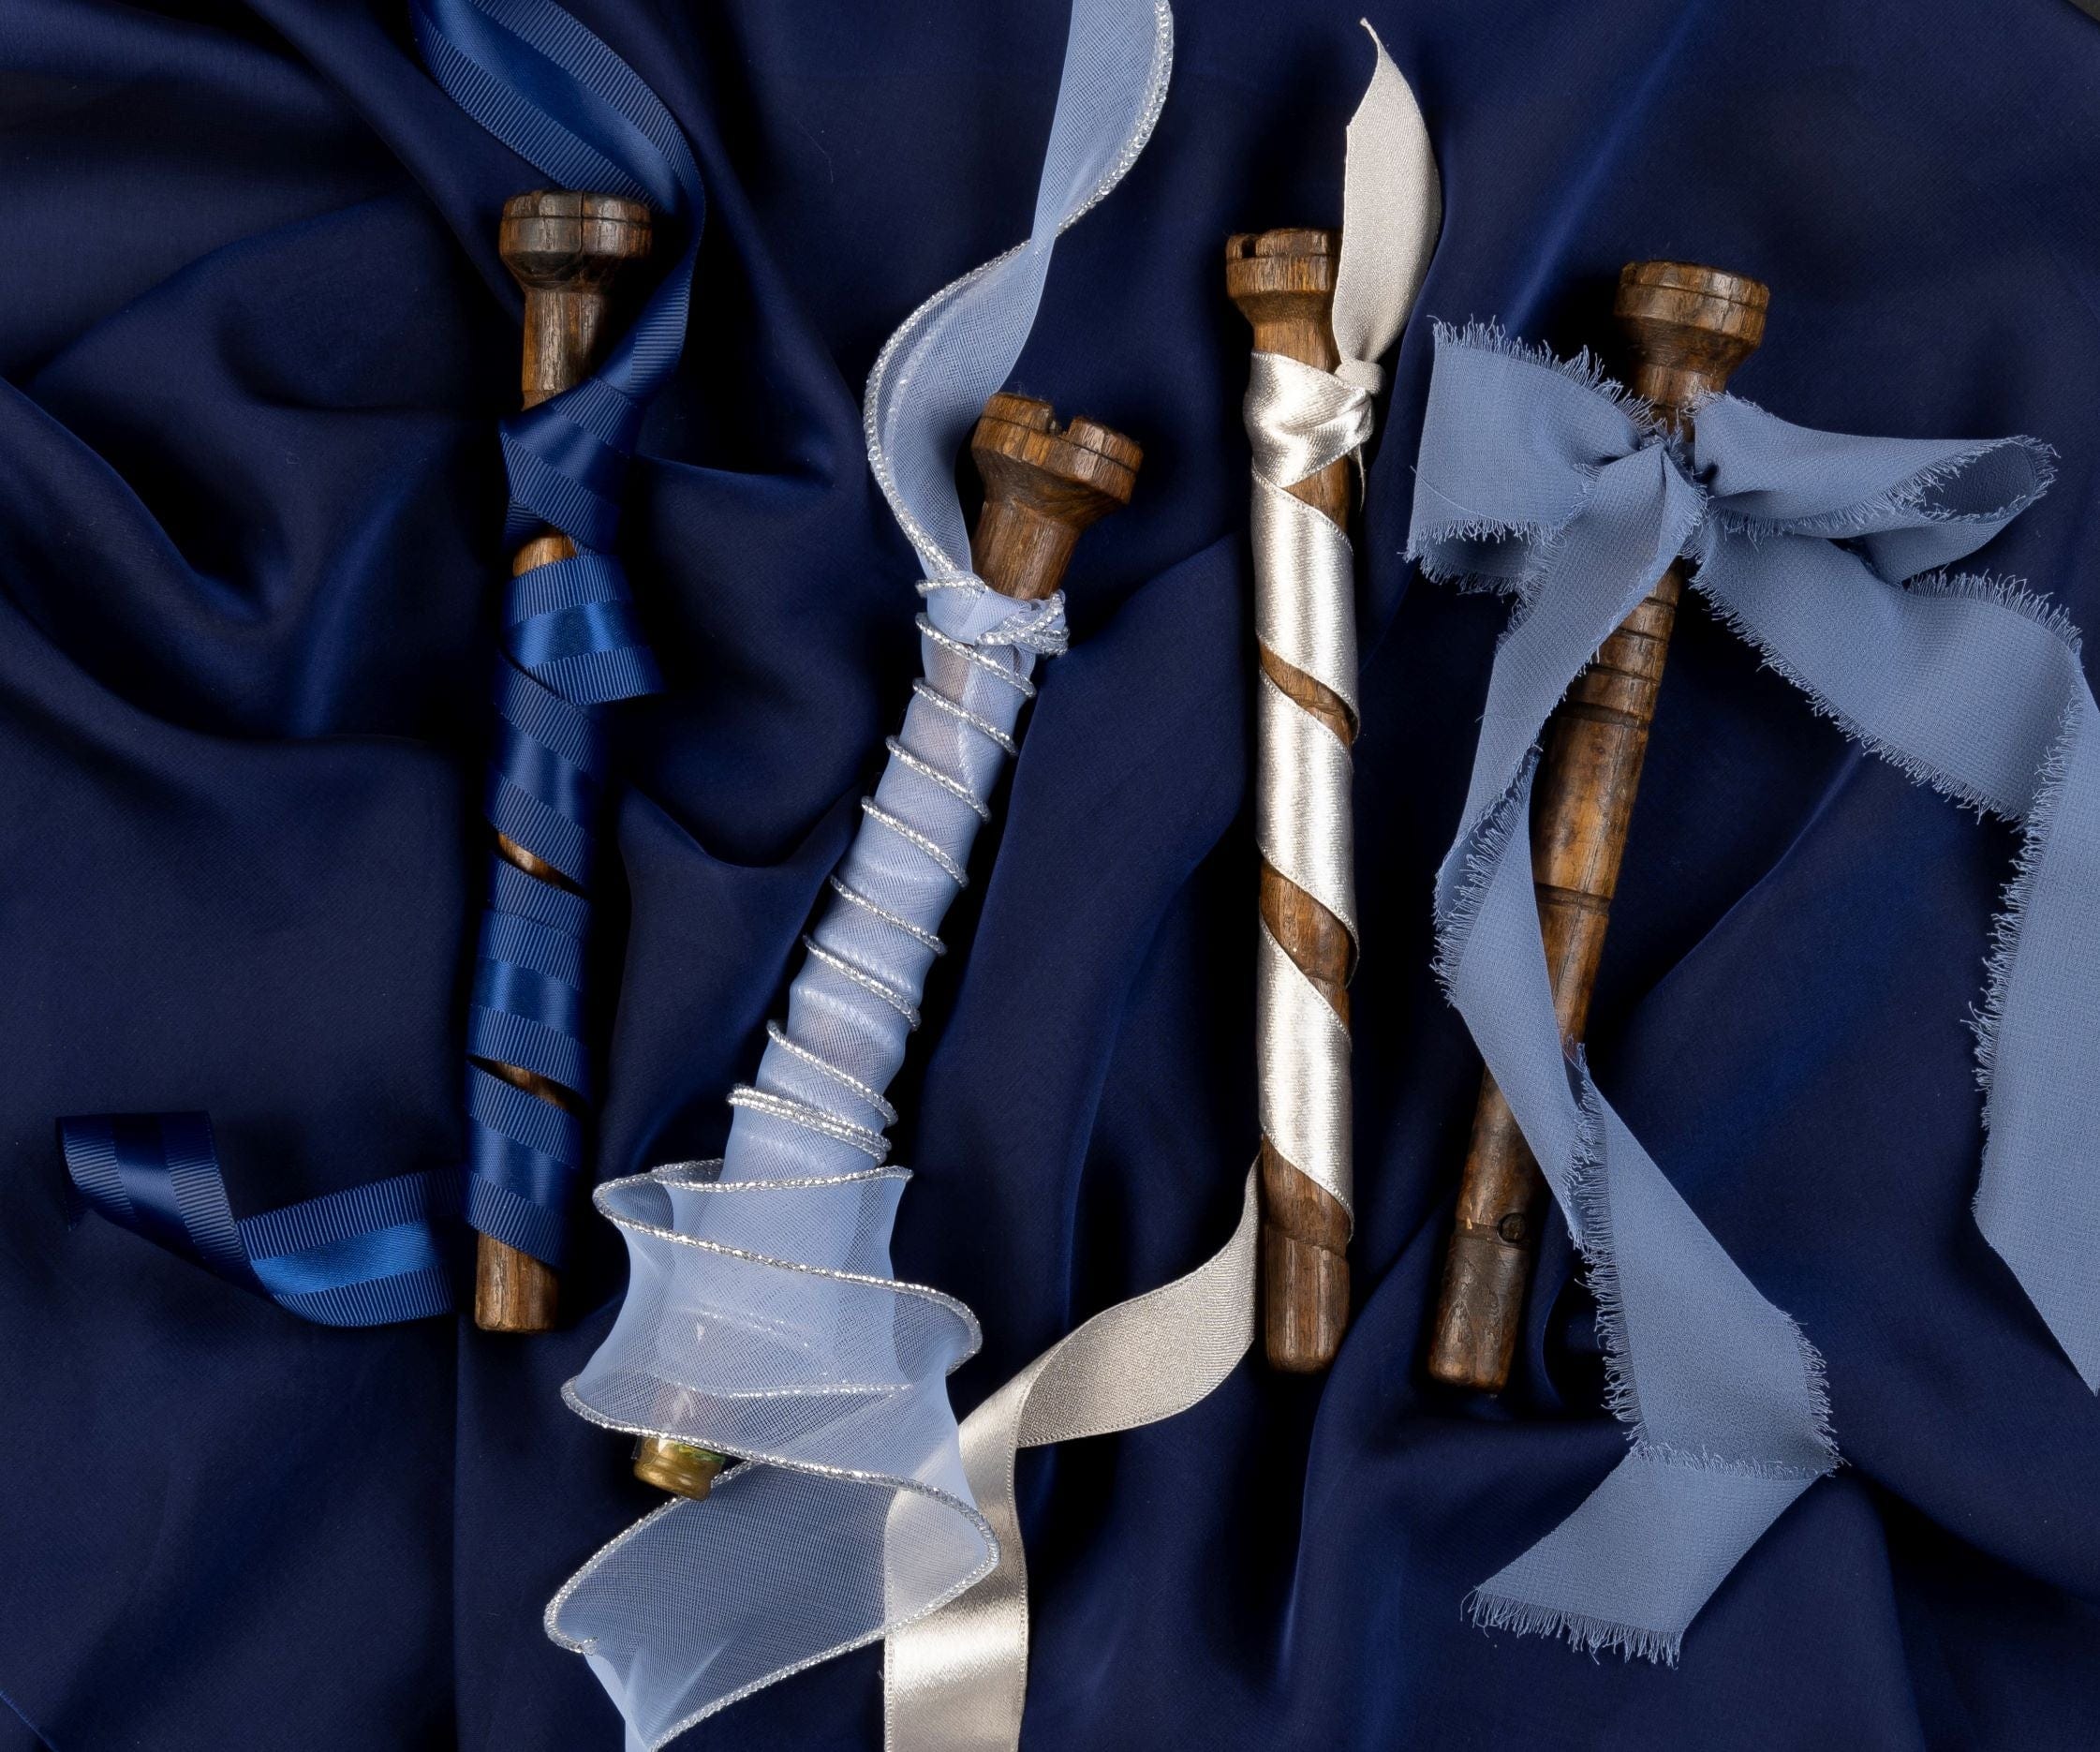 Ribbonly Grosgrain Blue / 20m / 25mm Grosgrain Satin Stripe Ribbon Anchor (Navy)